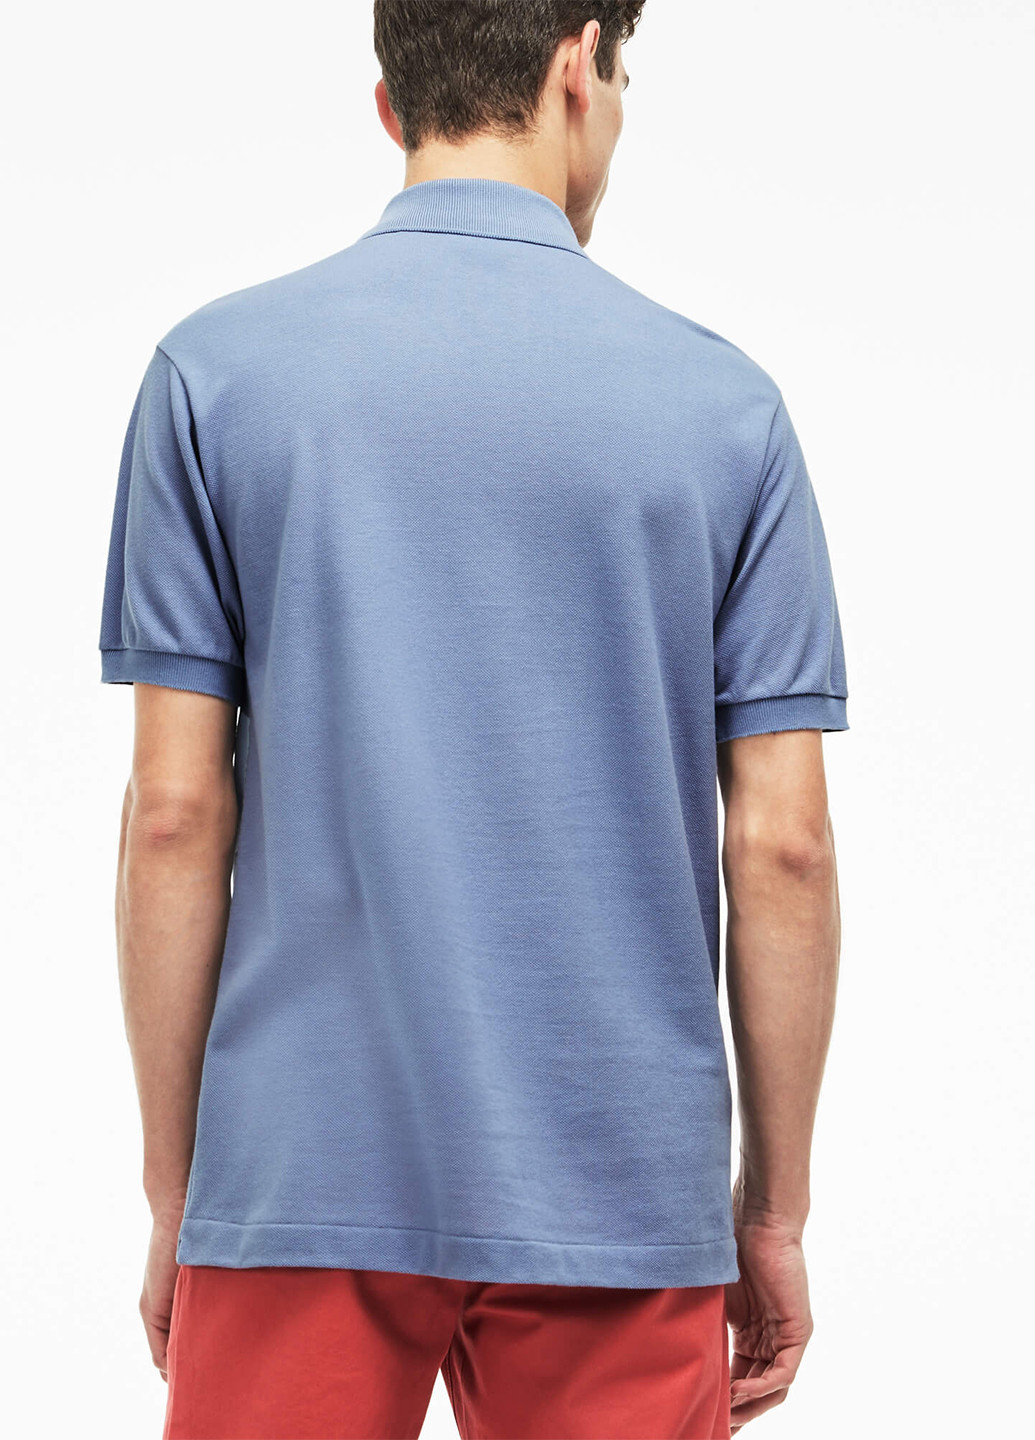 Темно-голубой футболка-поло для мужчин Lacoste однотонная